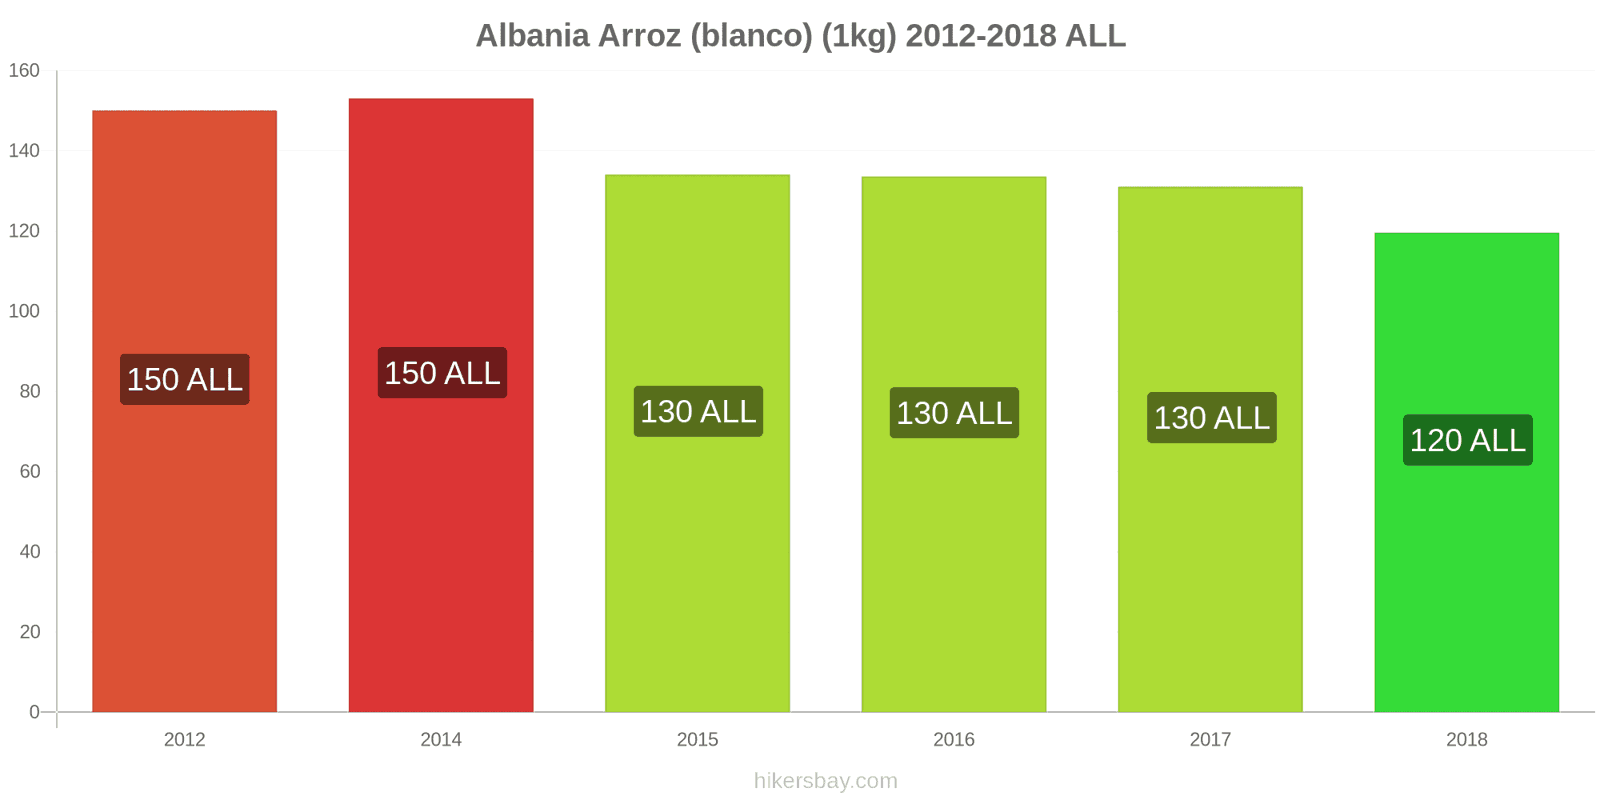 Albania cambios de precios Kilo de arroz blanco hikersbay.com